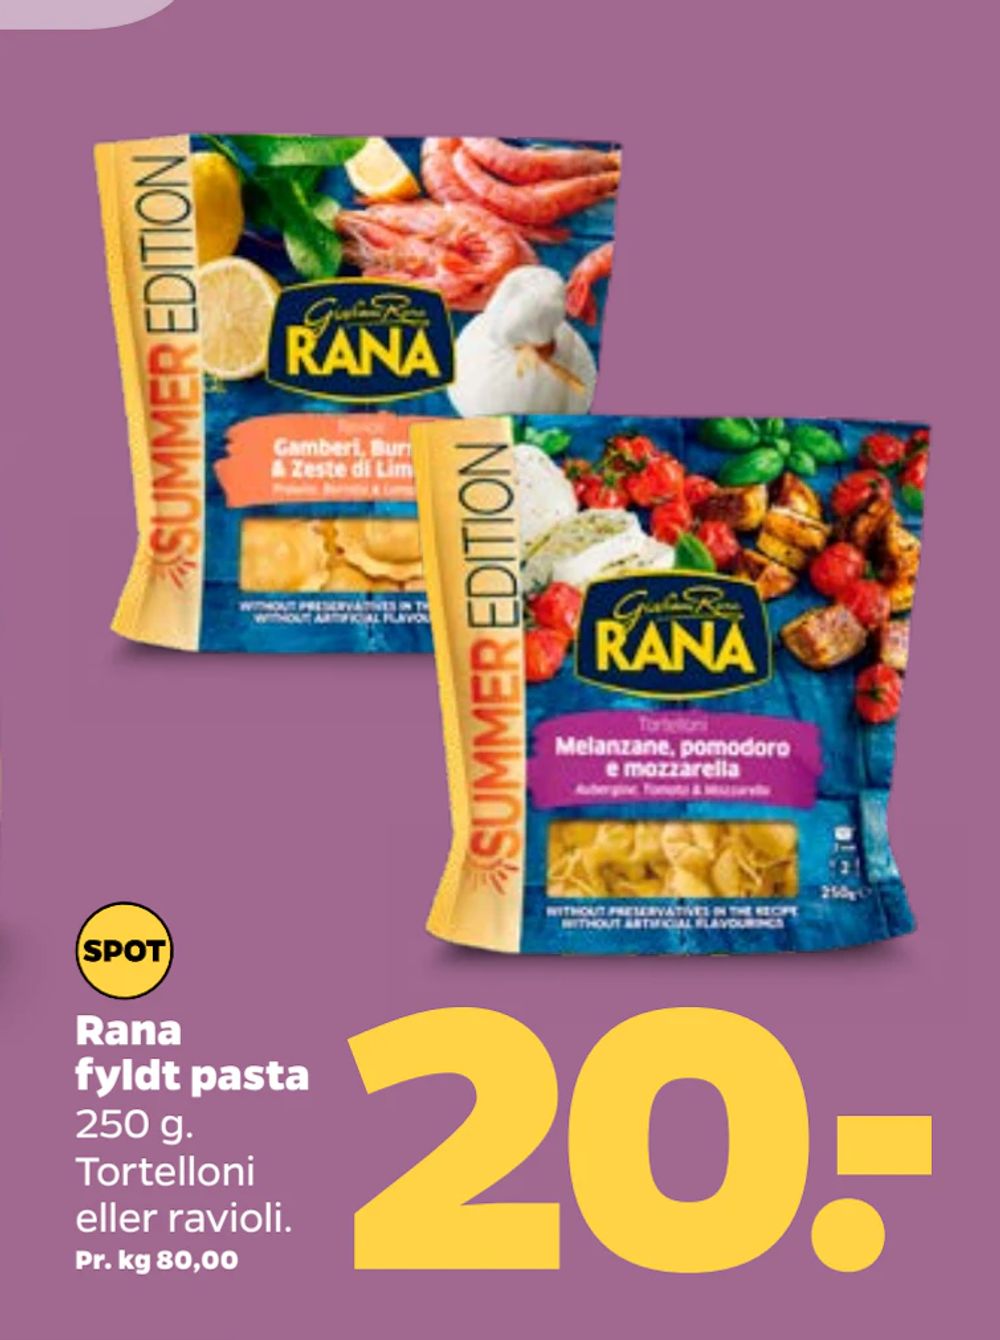 Tilbud på Rana fyldt pasta fra Netto til 20 kr.